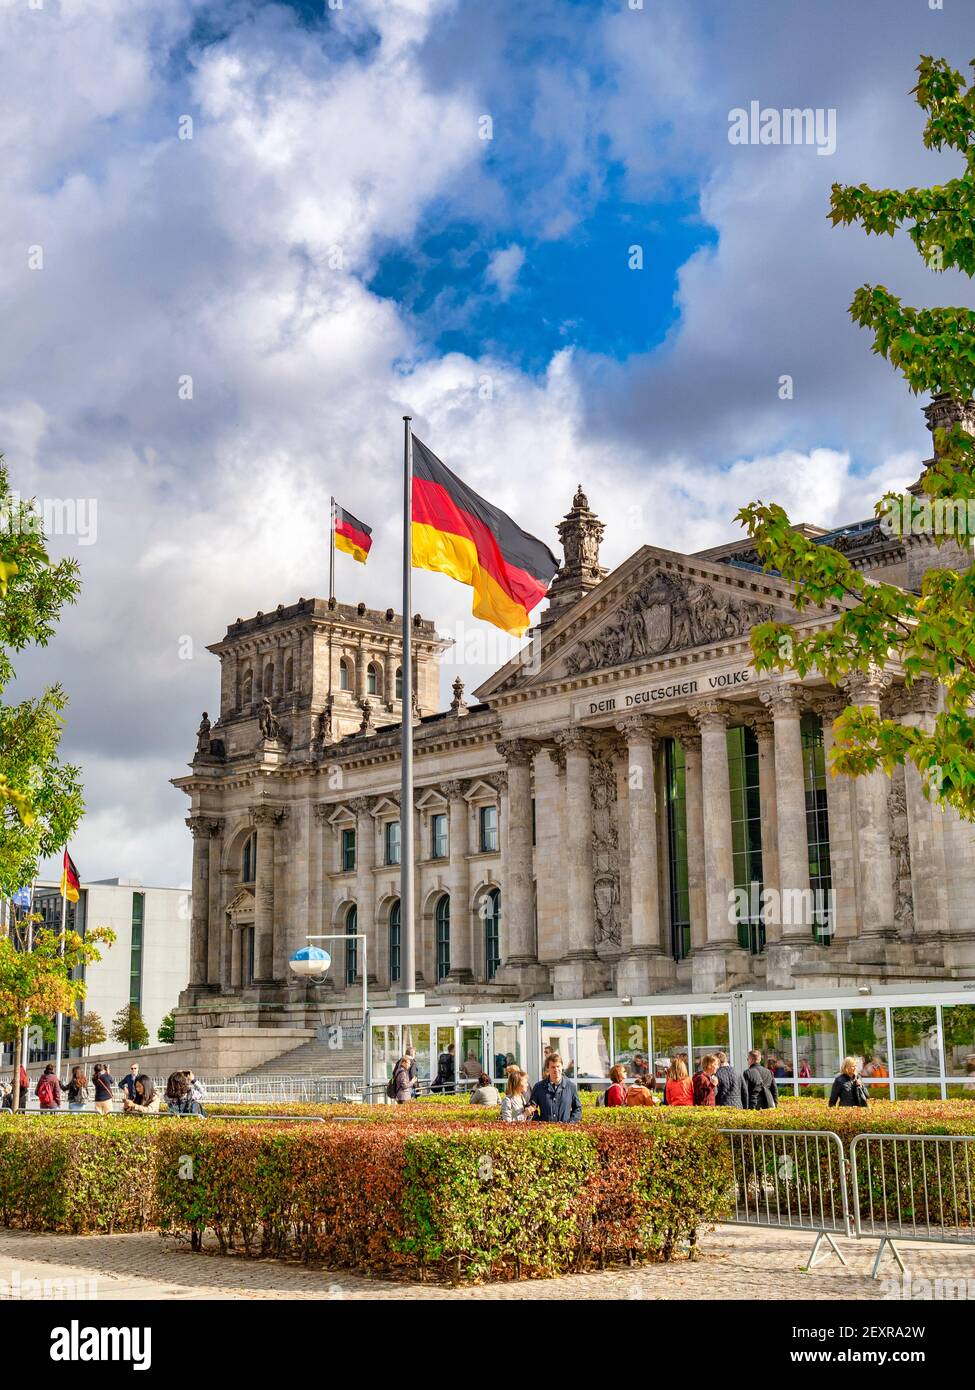 22. September 2018: Berlin, Deutschland - der Reichstag, Deutsches Parlamentsgebäude, mit Fahnen fliegen, Touristen Sightseeing. Stockfoto